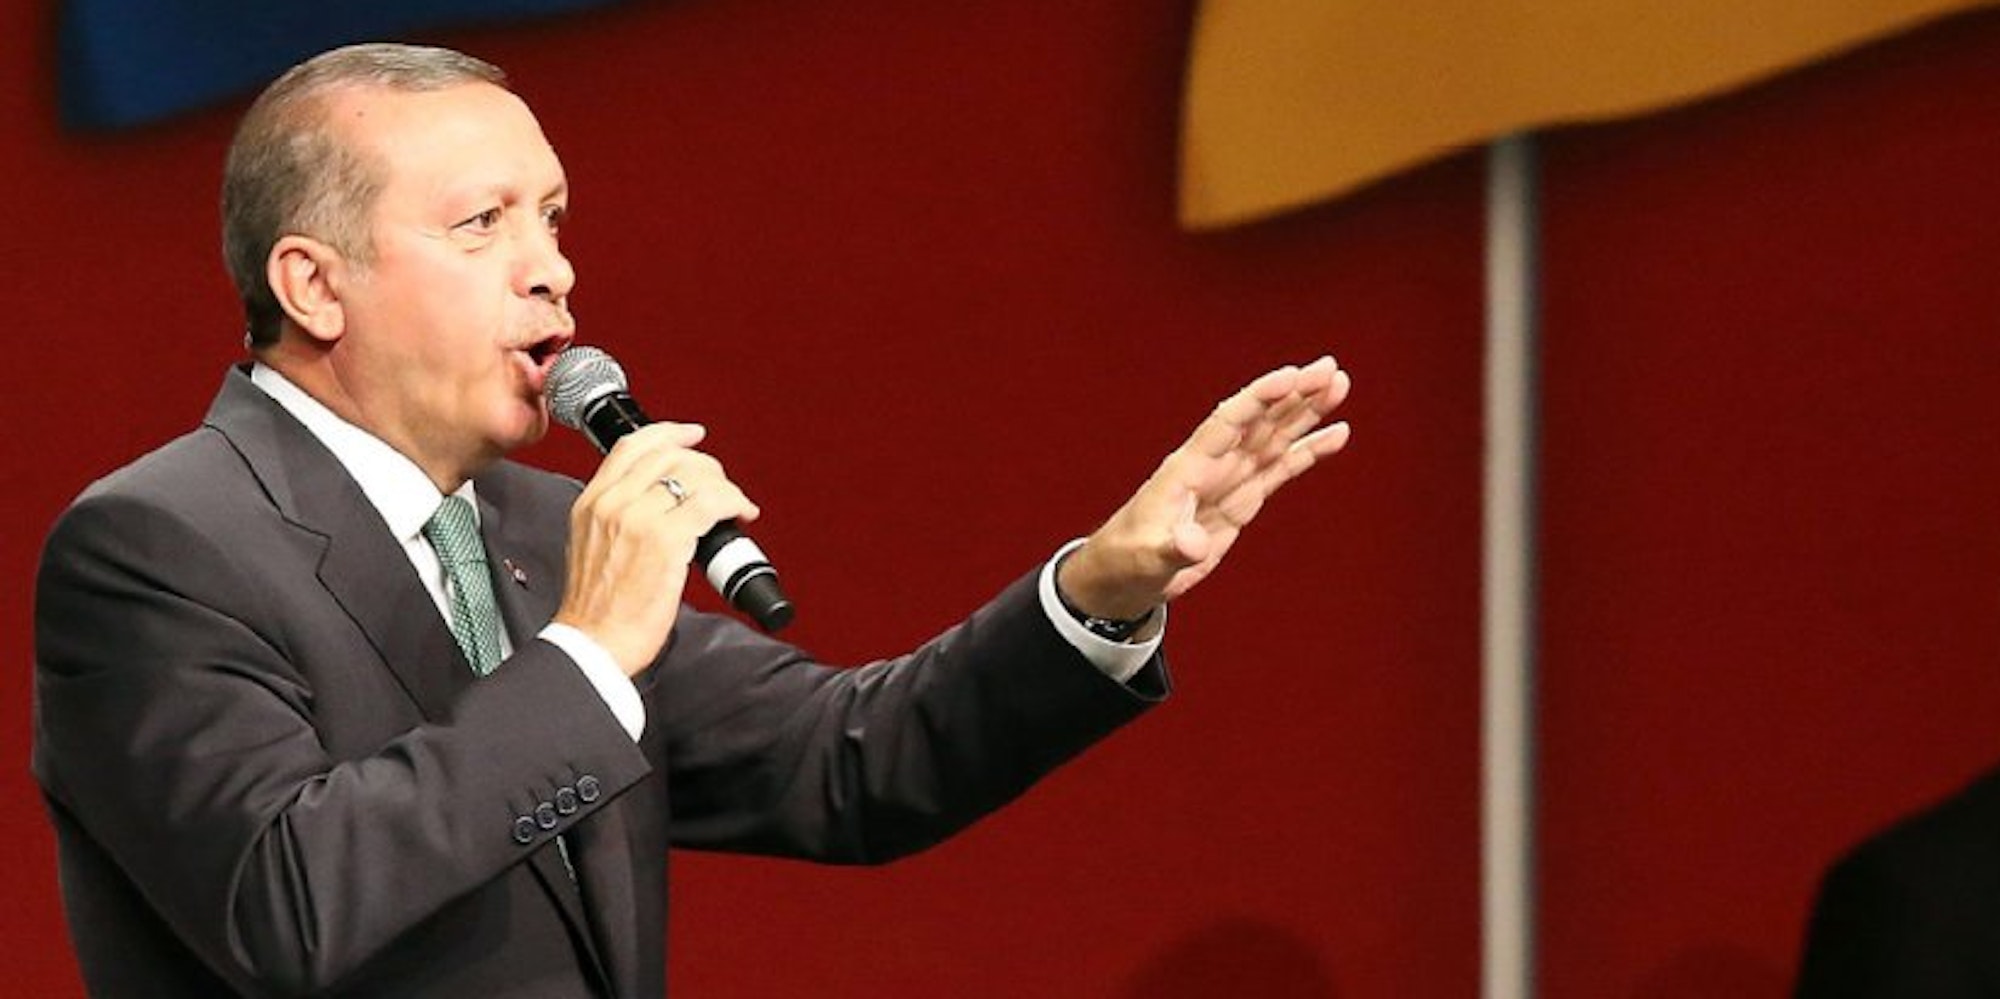 Der türkische Ministerpräsident Recep Tayyip Erdogan spricht in Köln (Nordrhein-Westfalen) in der Lanxes-Arena.